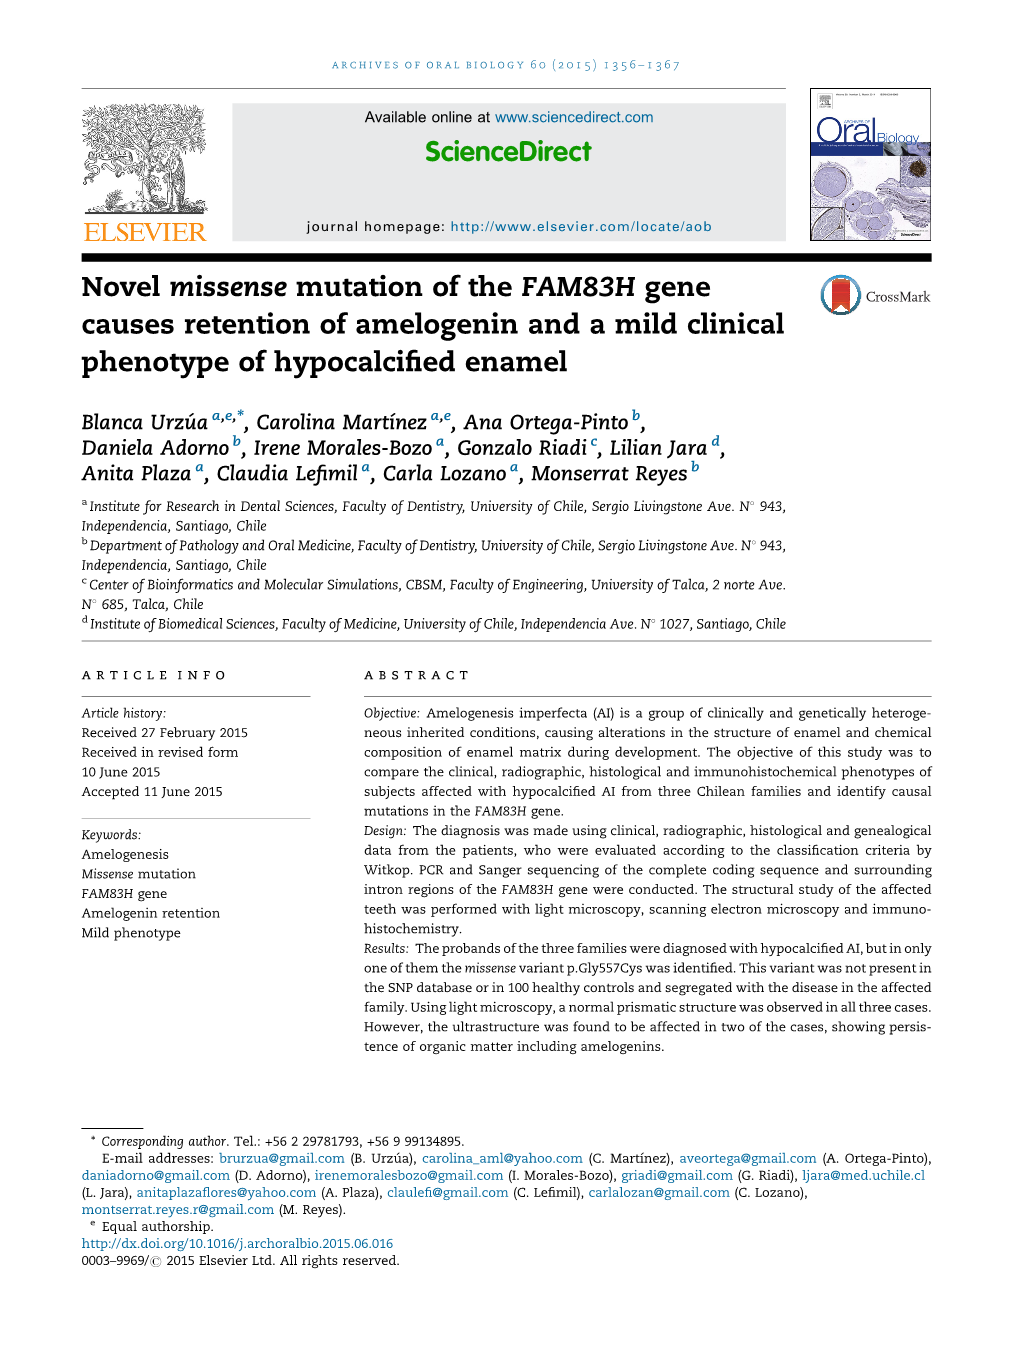 Novel Missense Mutation of the FAM83H Gene Causes Retention Of